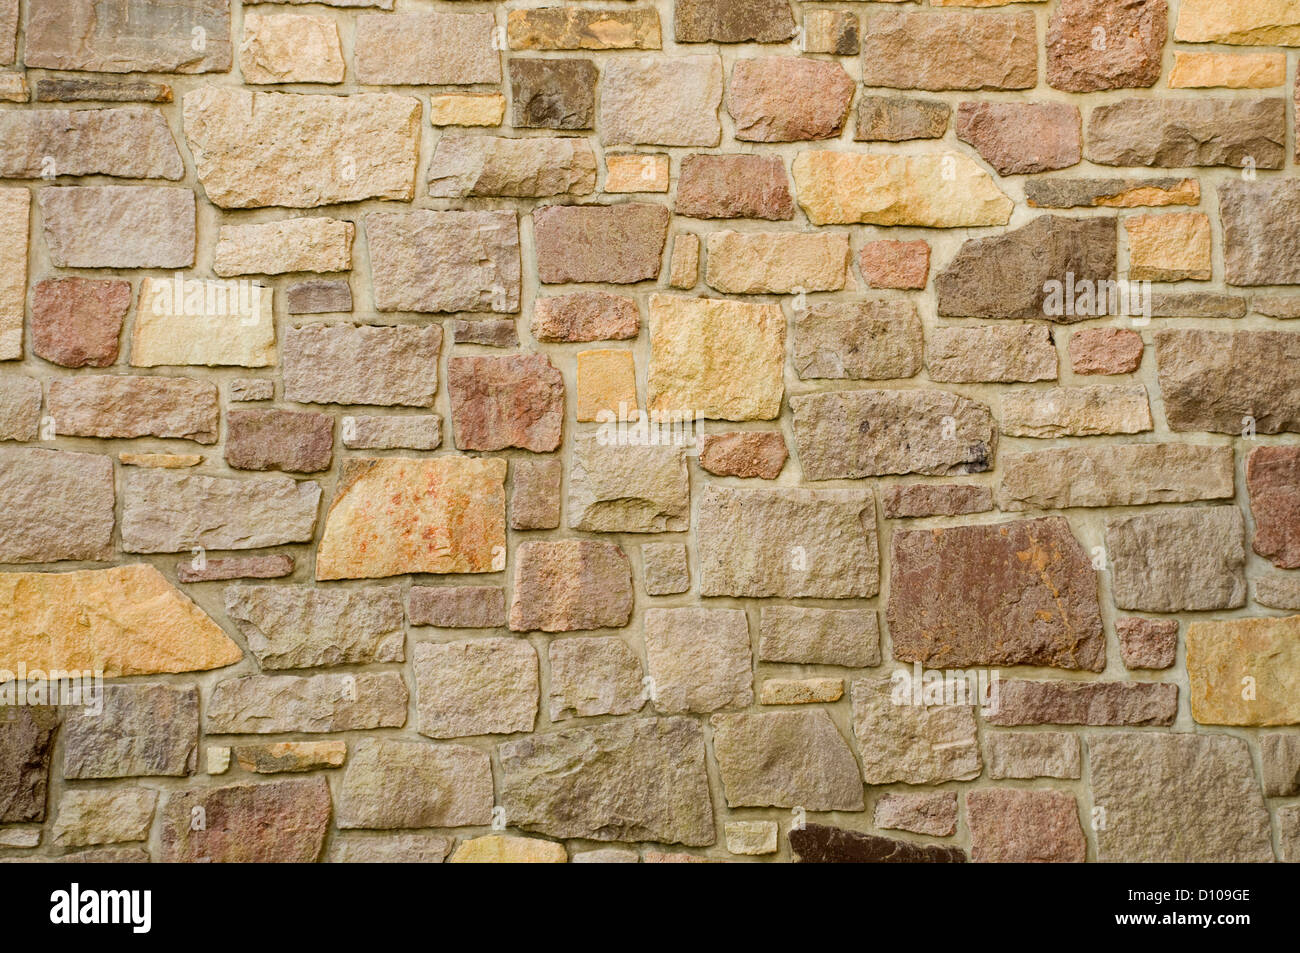 Un mur en maçonnerie de pierres multicolores ou des blocs Banque D'Images